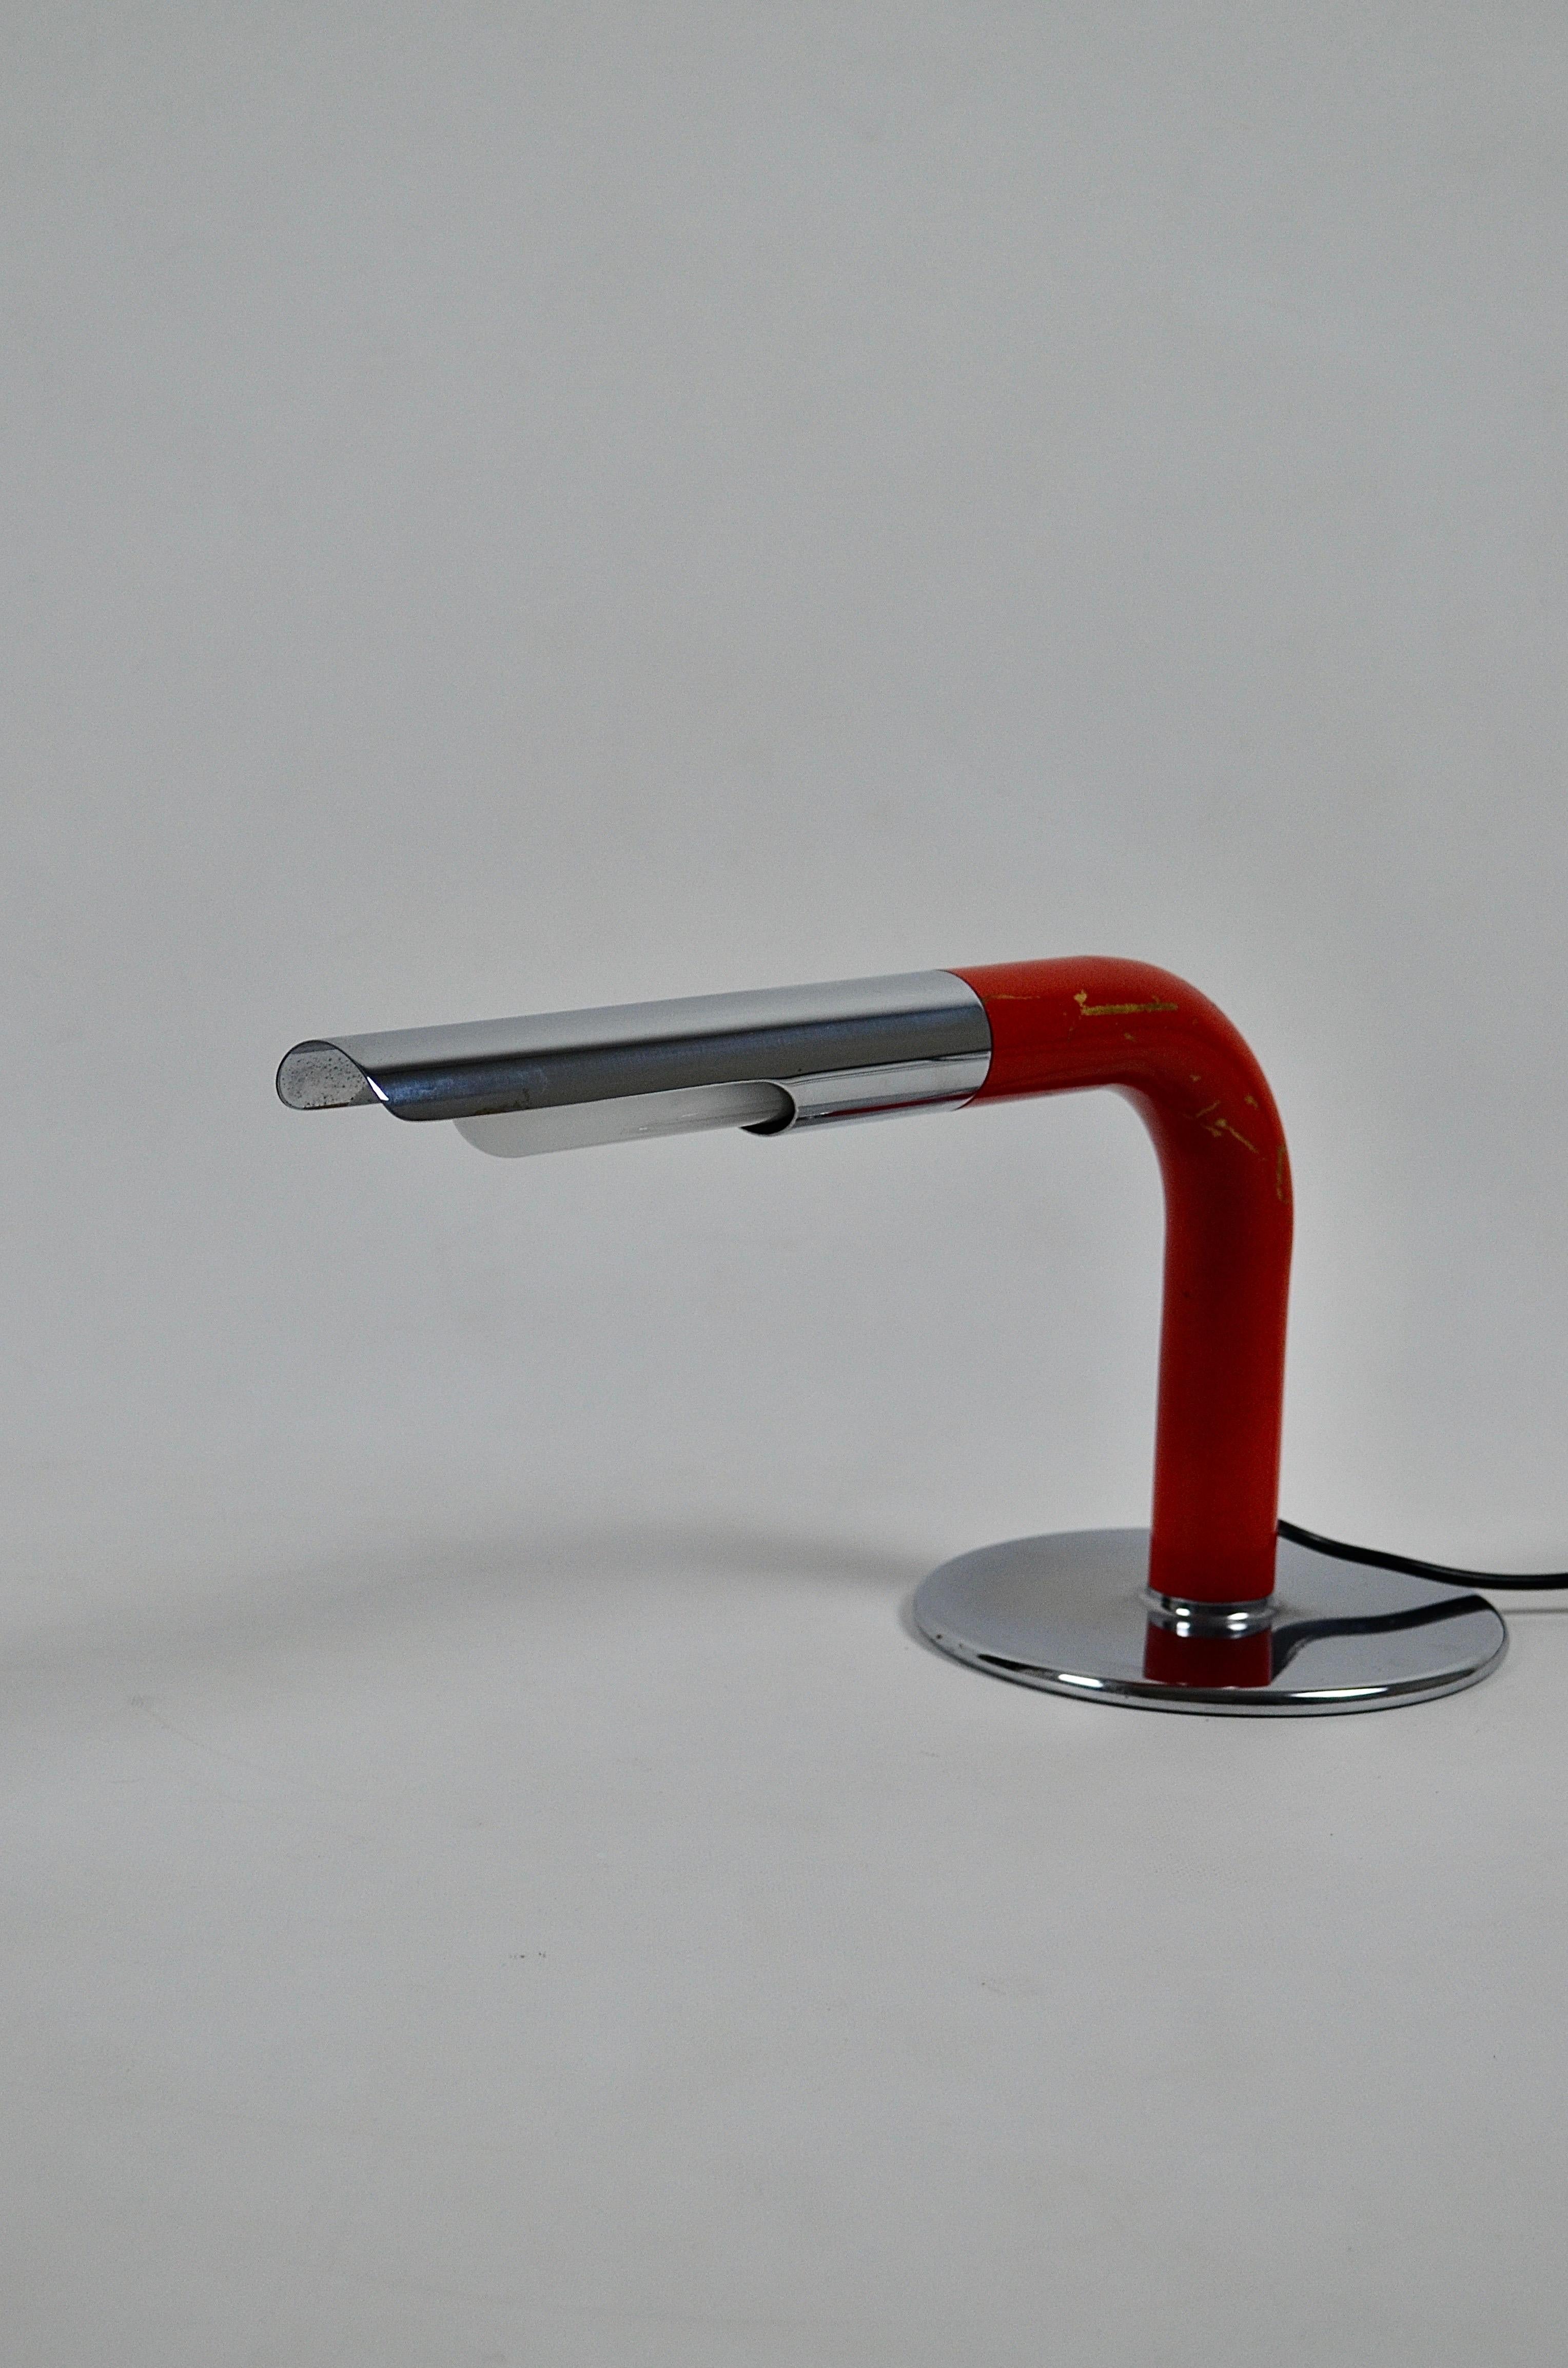 La lampe Gulp a été conçue par le célèbre designer de lampes, Ingo Maurer, dans les années 1960. La forme est simple et très élégante, elle est constituée d'un tuyau plié à un angle de 90 degrés et coupé ouvert à l'extrémité avant. En dessous, il